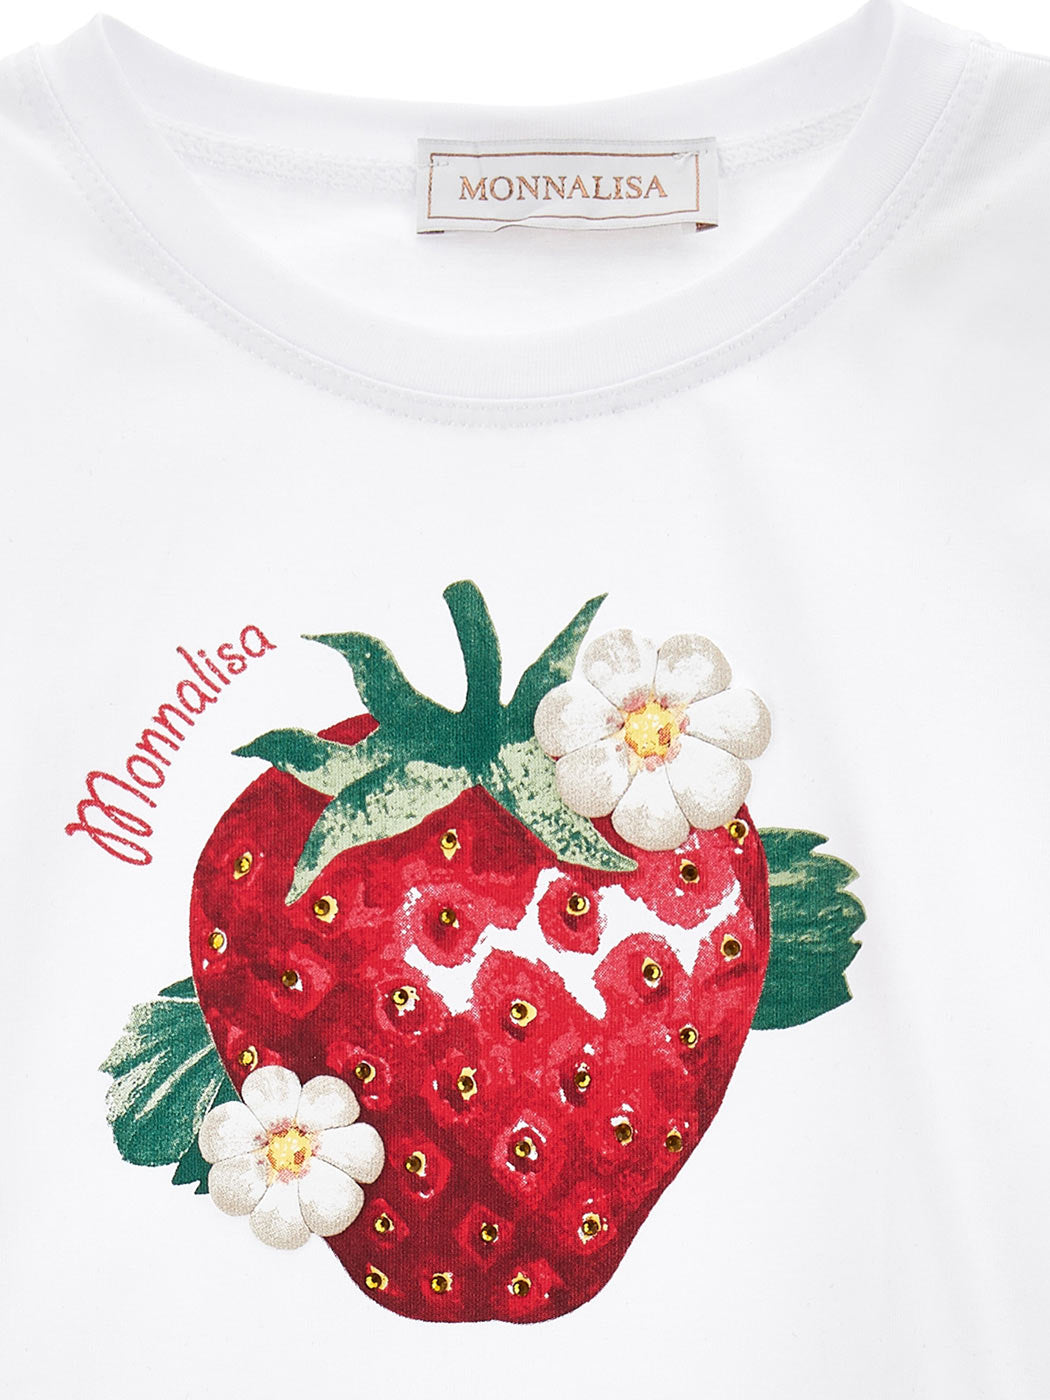 Monnalisa strawberry print jersey T-shirt